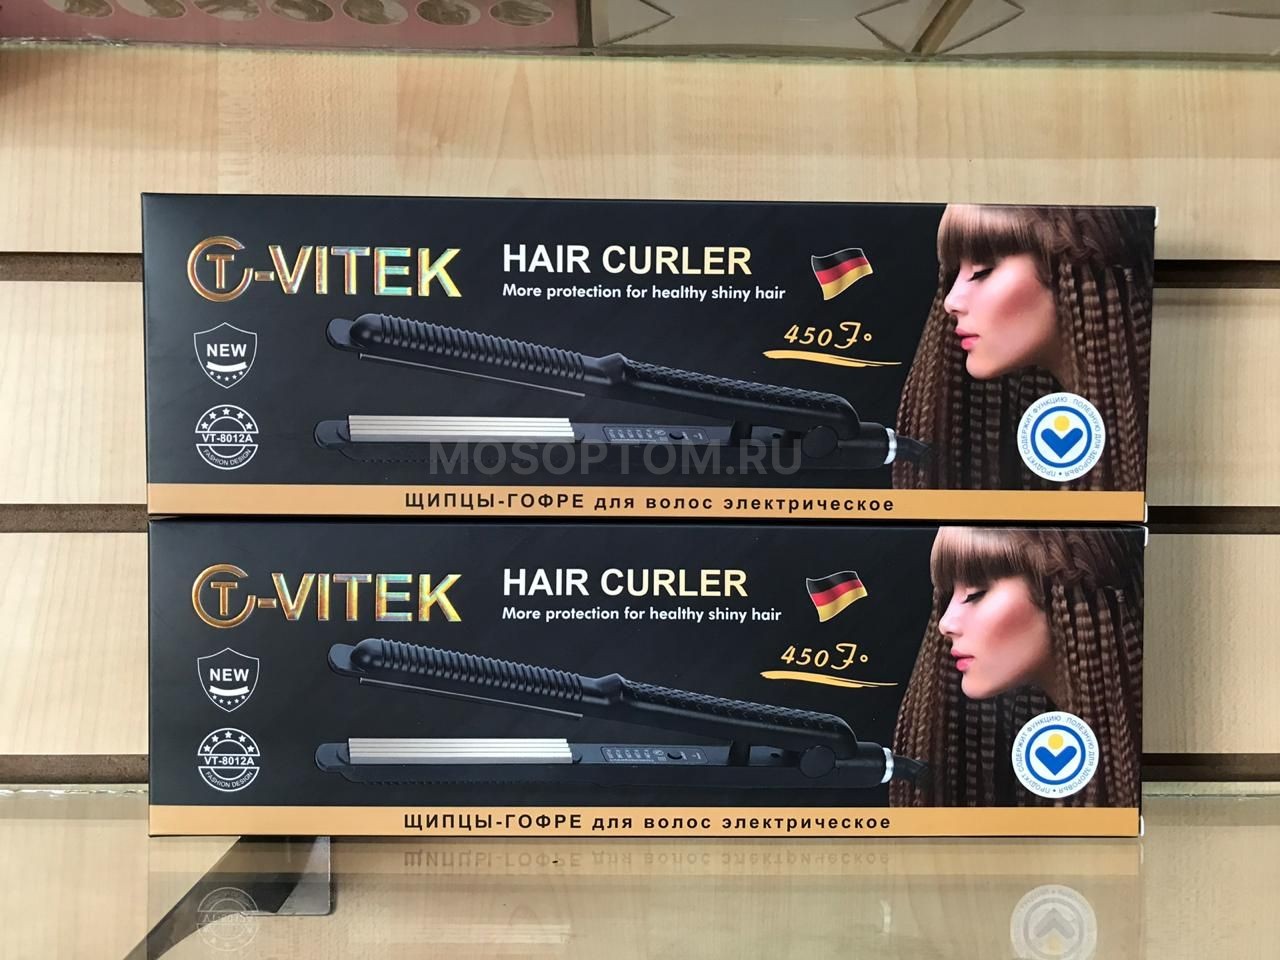 Щипцы-гофре для прикорневого объема T-Vitek Hair Curler оптом - Фото №2